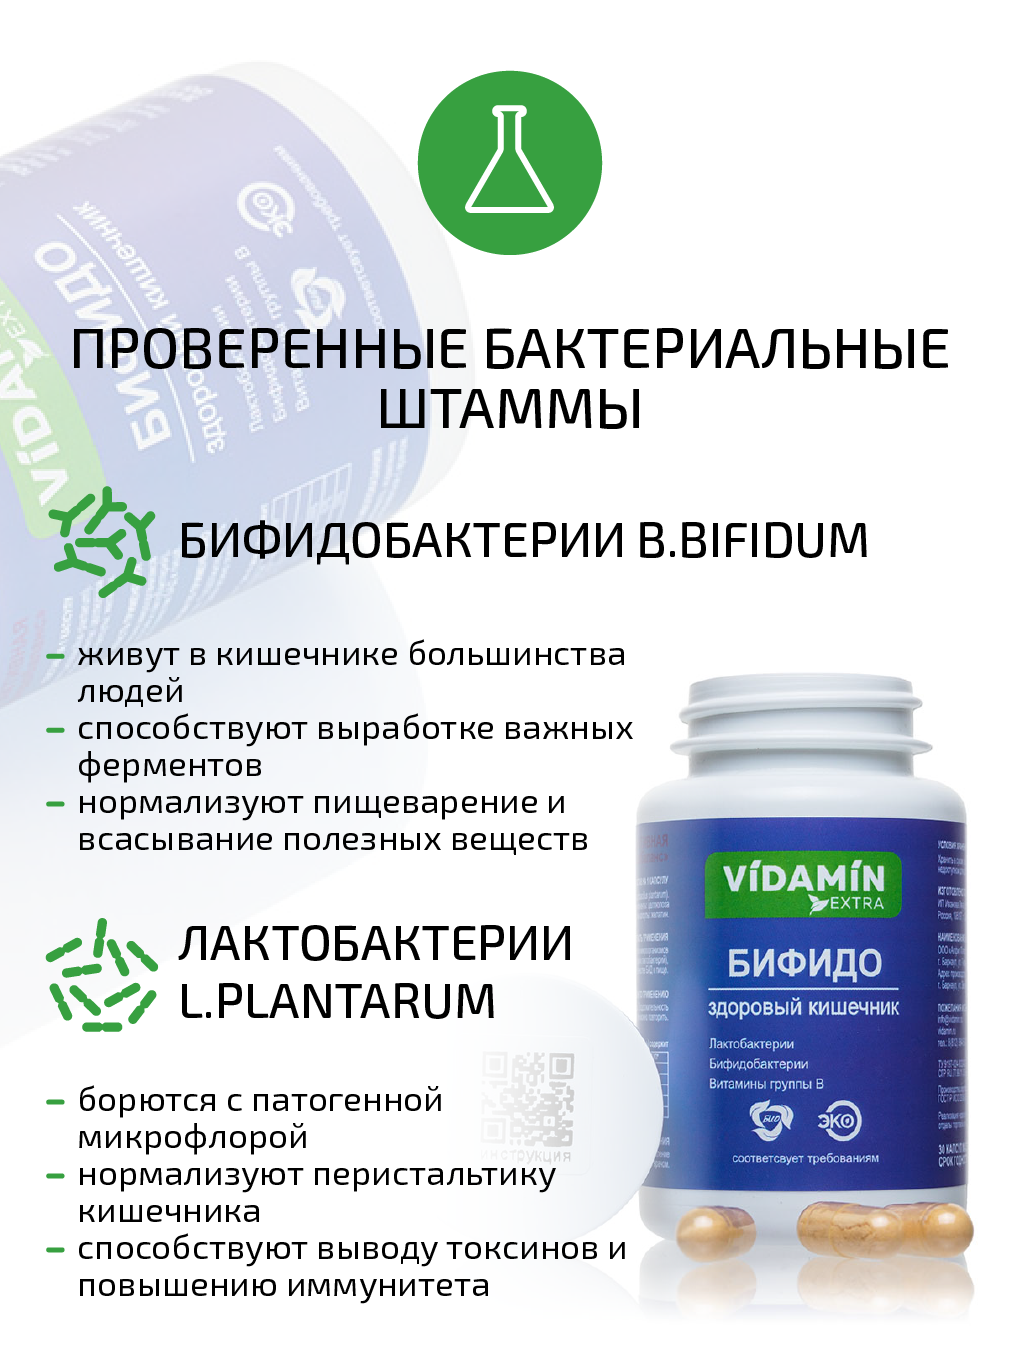 Витамины группы В и пробиотики VIDAMIN EXTRA 30 капсул - фото 5